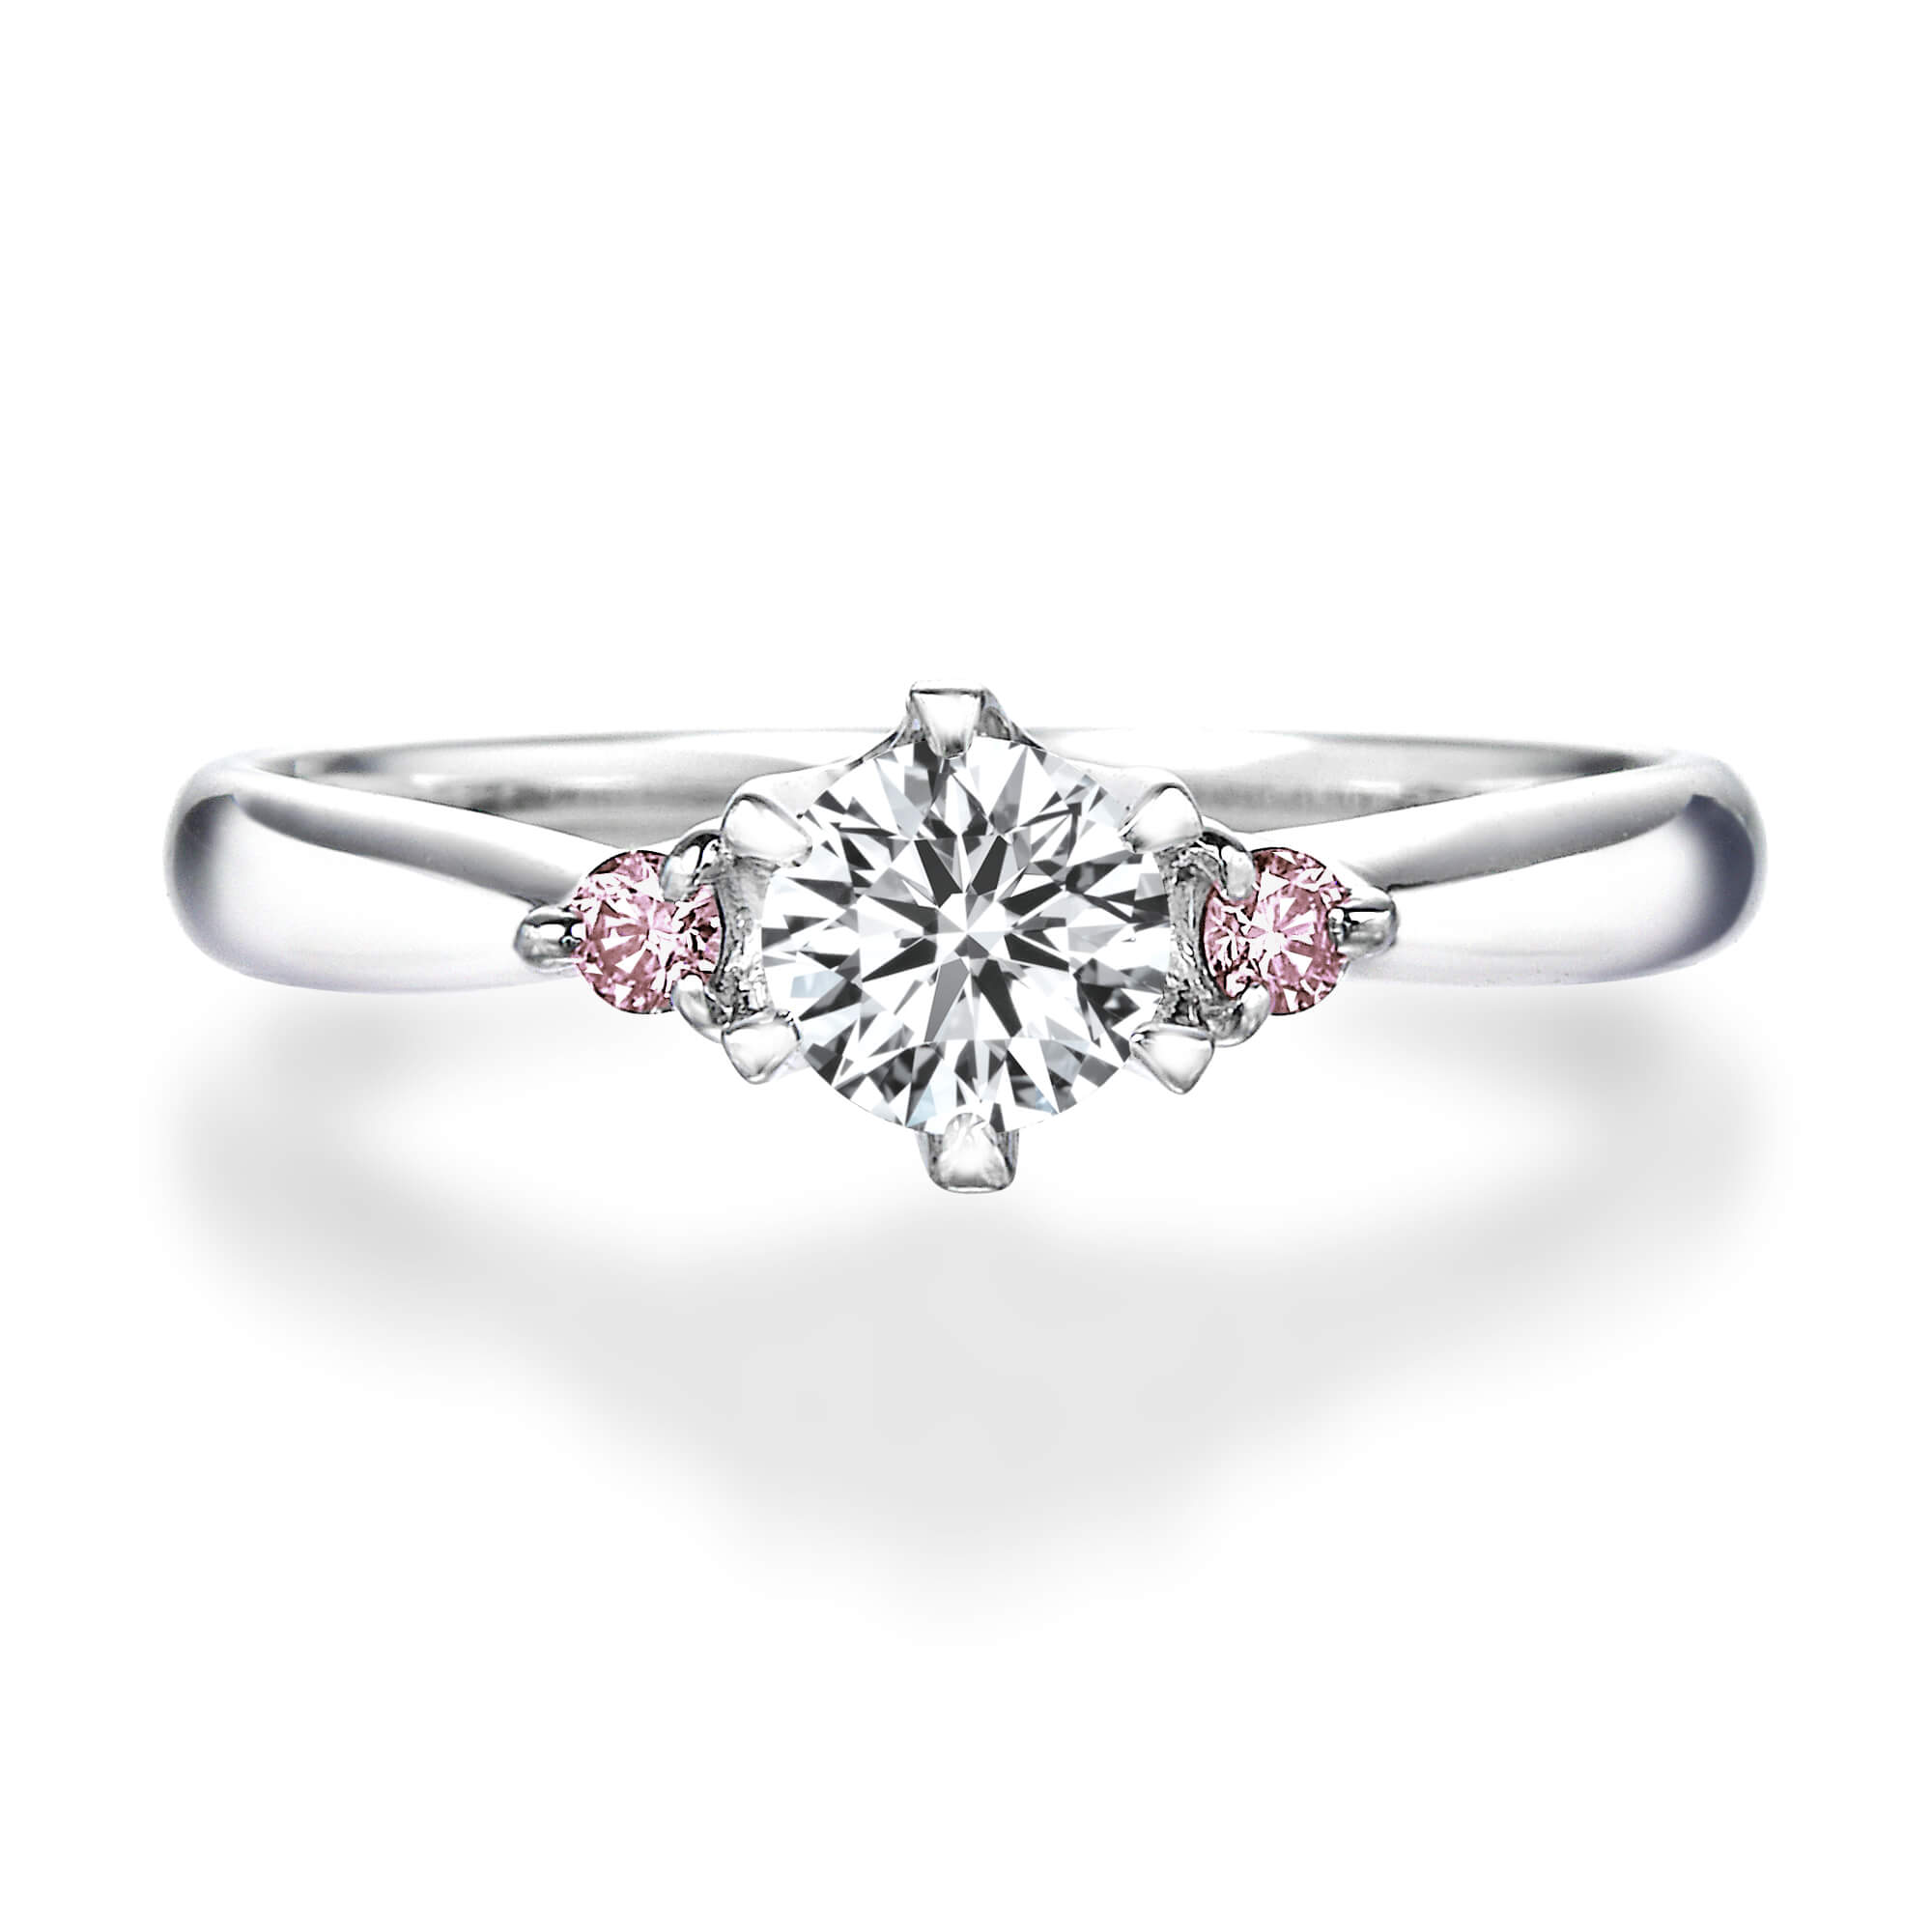 6本爪サイドストーンラウンドダイヤモンドリング 結婚指輪 婚約指輪のqdm